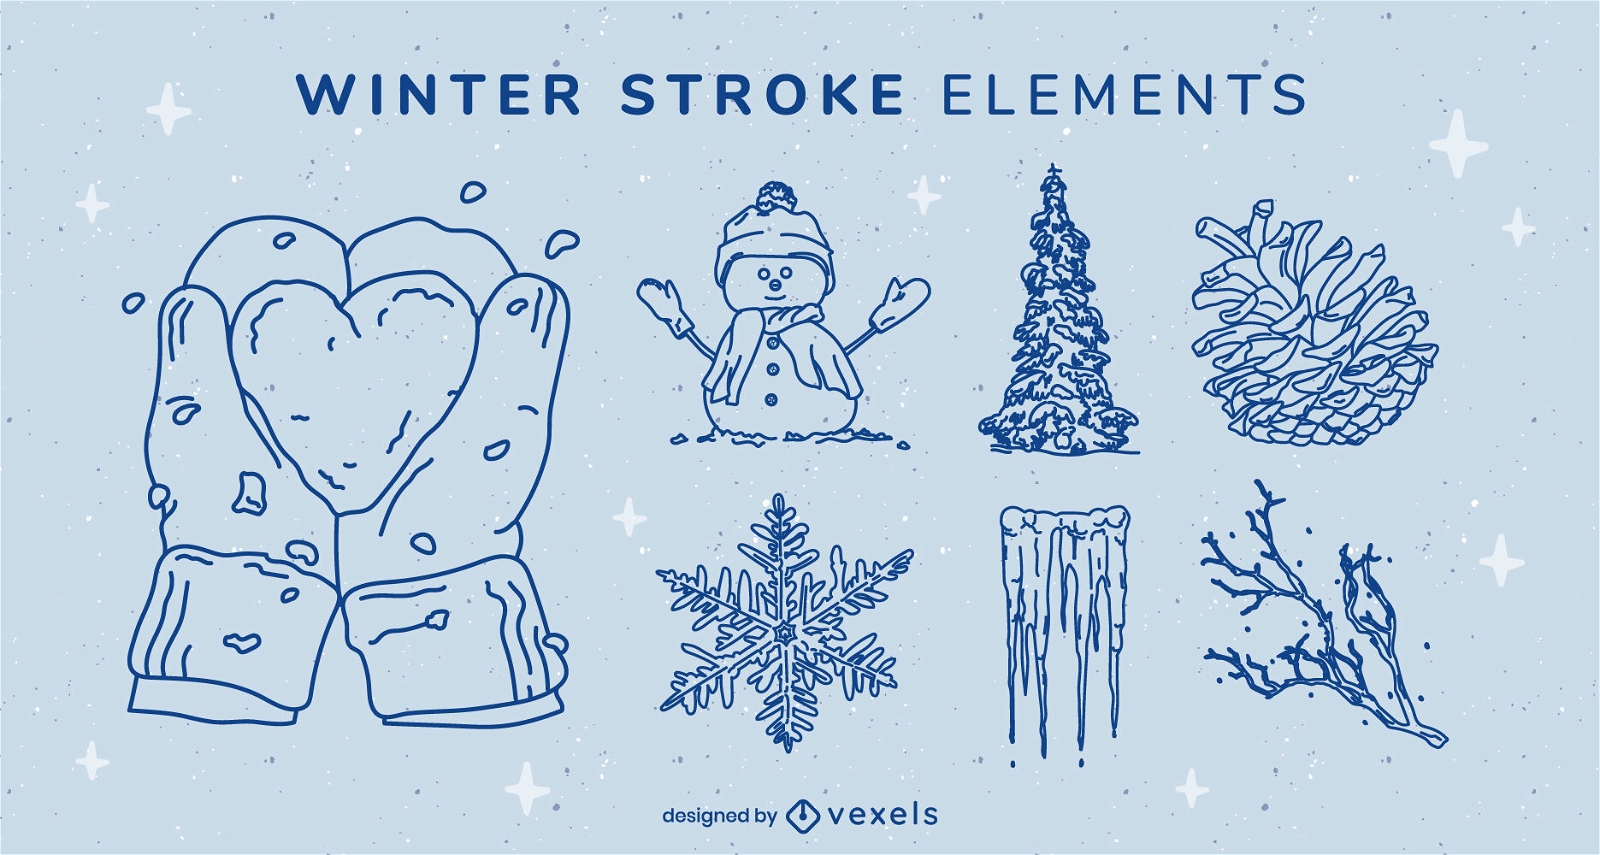 Winter elements stroke set